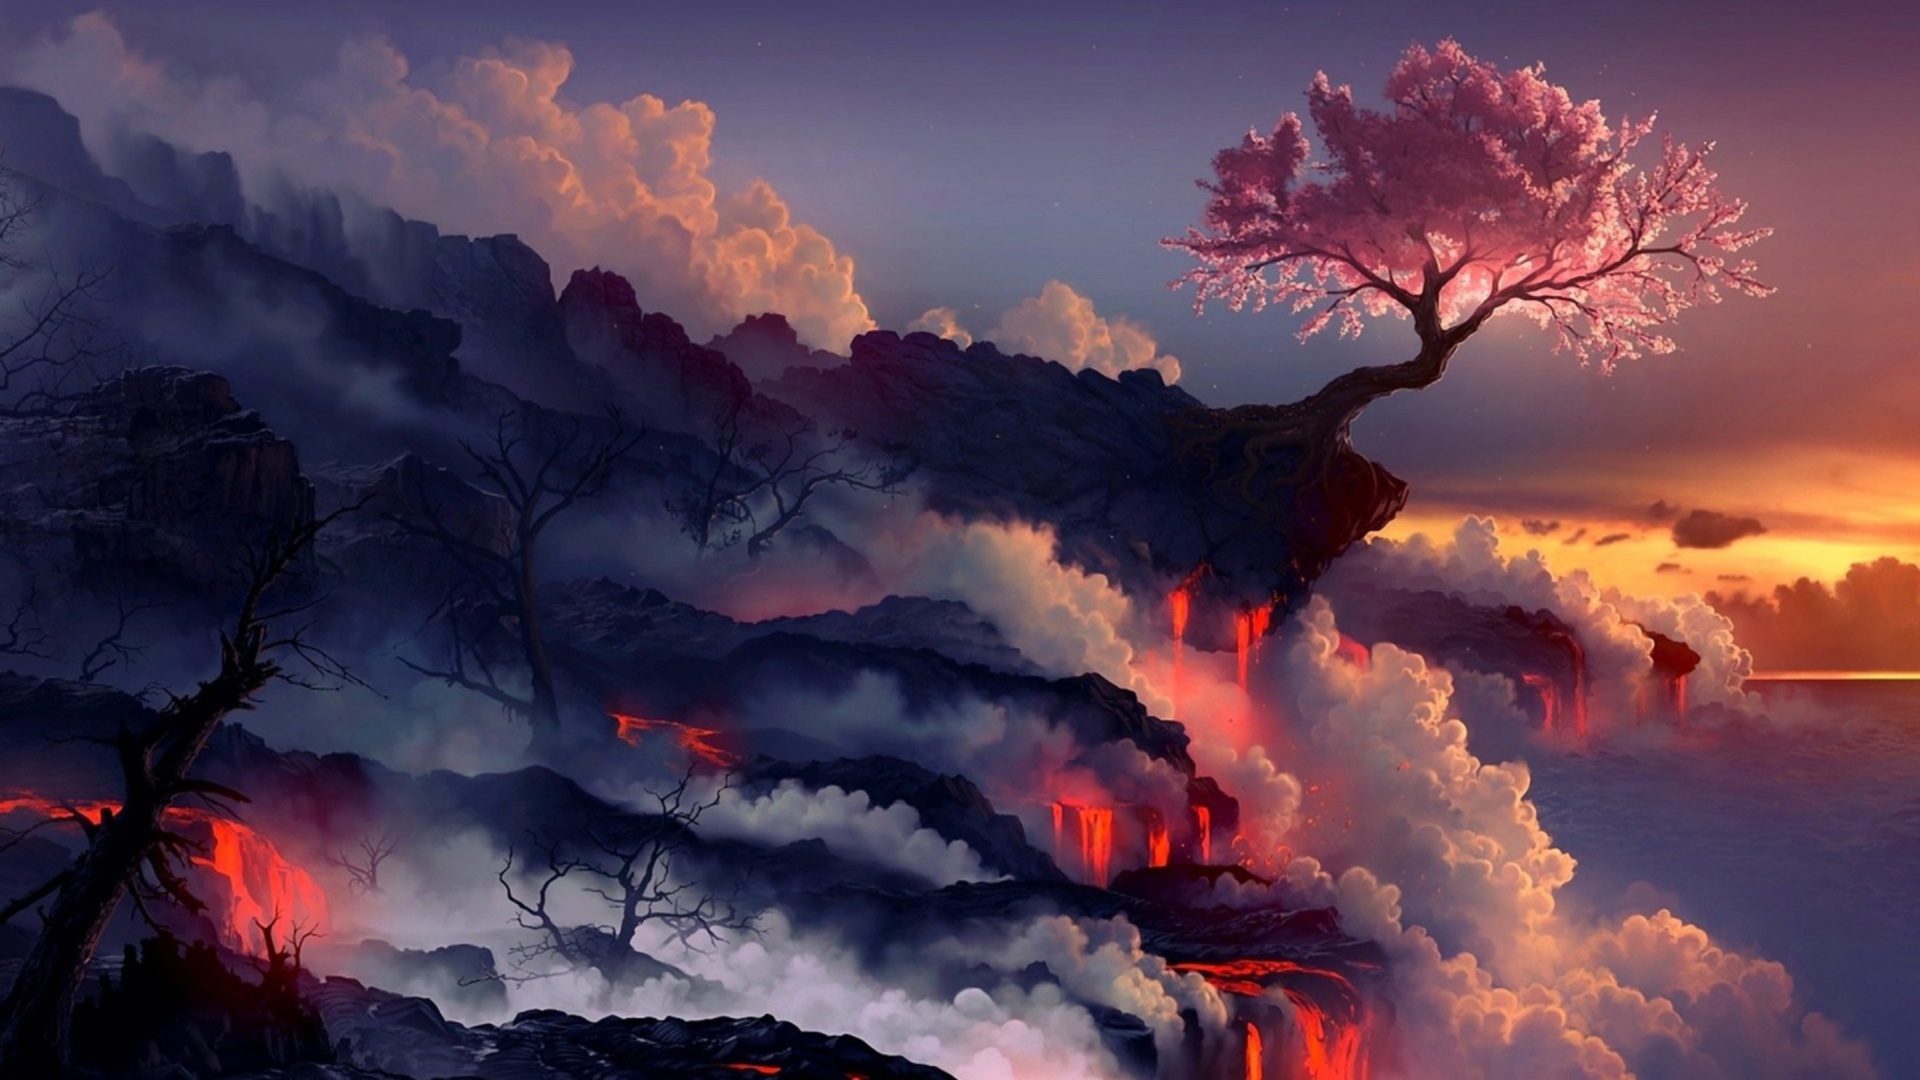 Anime Dark Landscape Wallpaper Desktop Background At